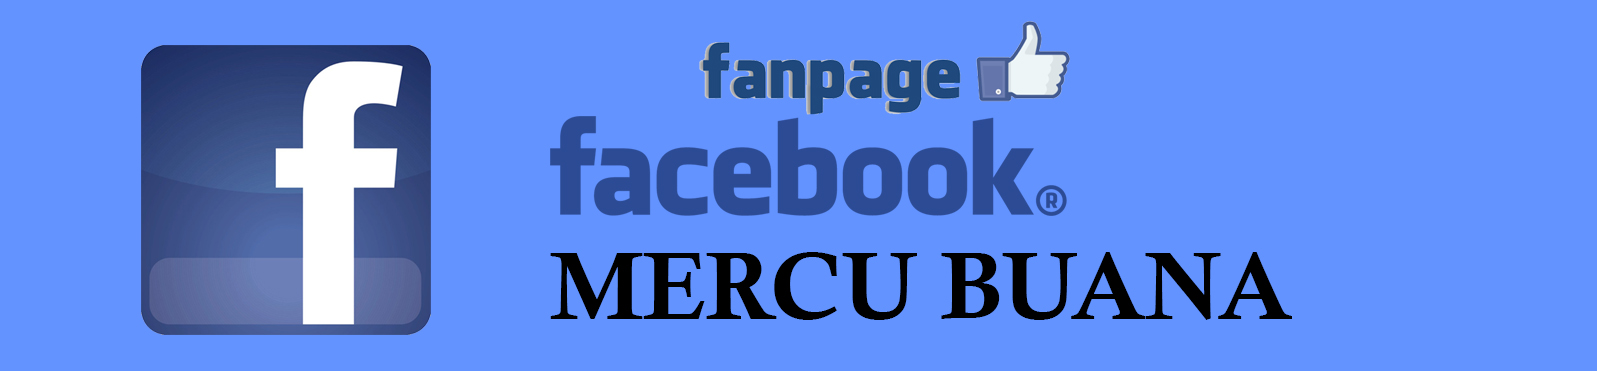 Facebook Fanpage UMBCTC